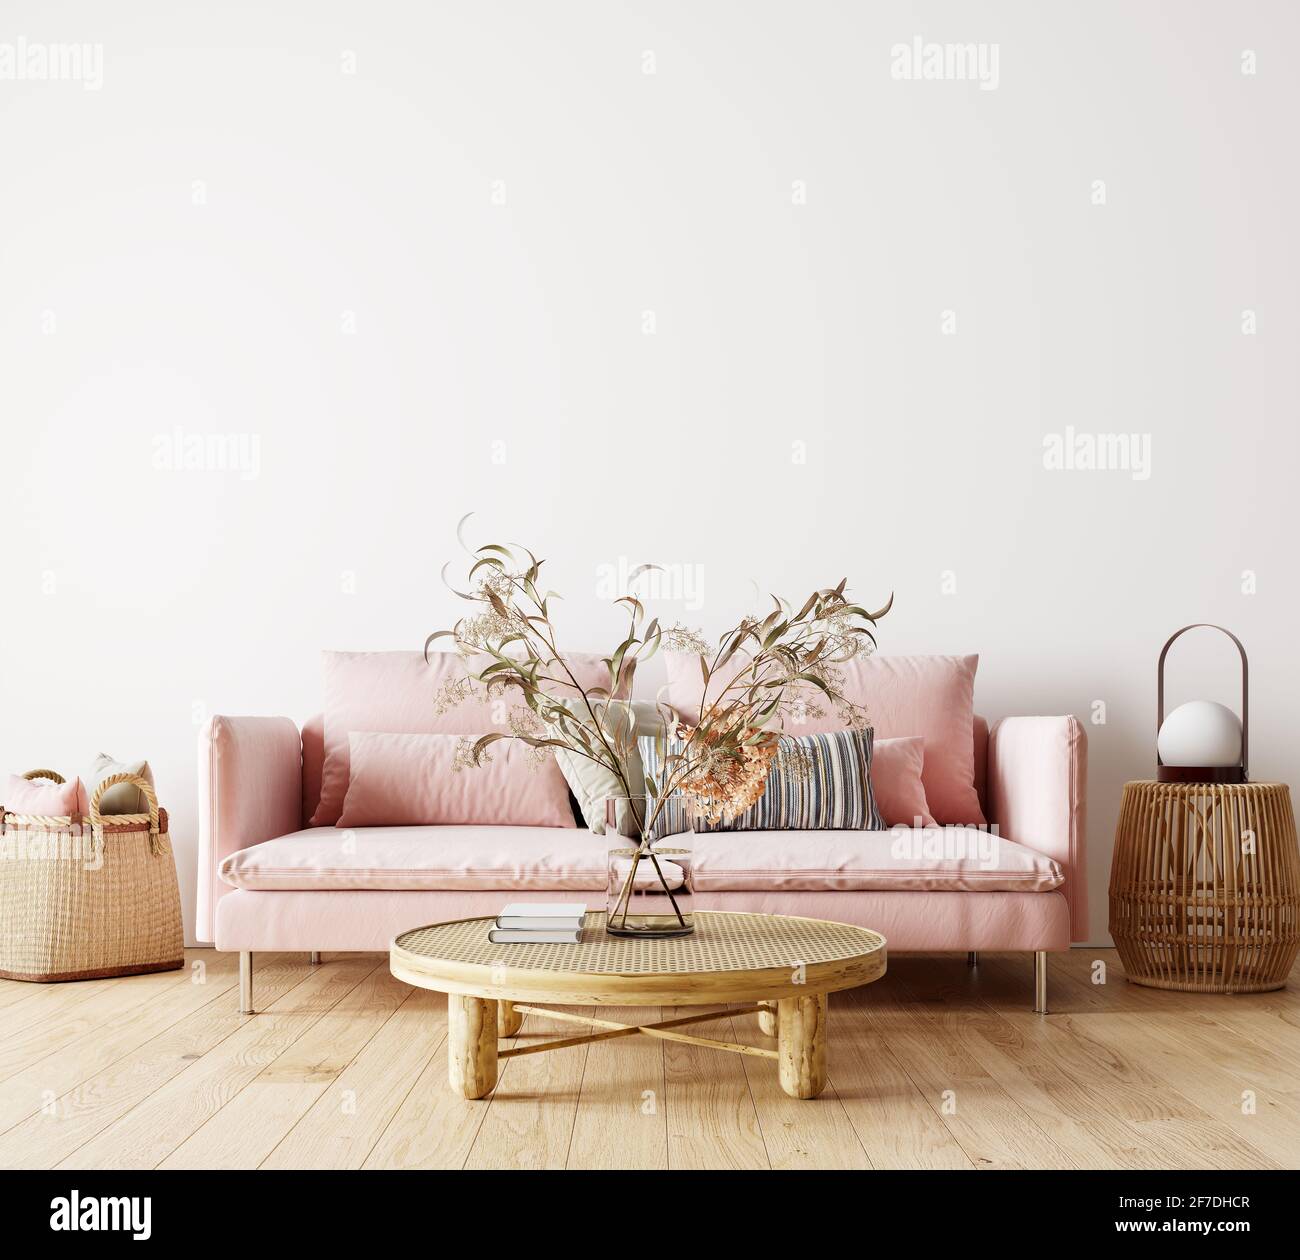 Interni dal design moderno del soggiorno con divano rosa, decorazioni con piante secche e pareti bianche vuote mock up sfondo 3D rendering, illustrazione 3D Foto Stock